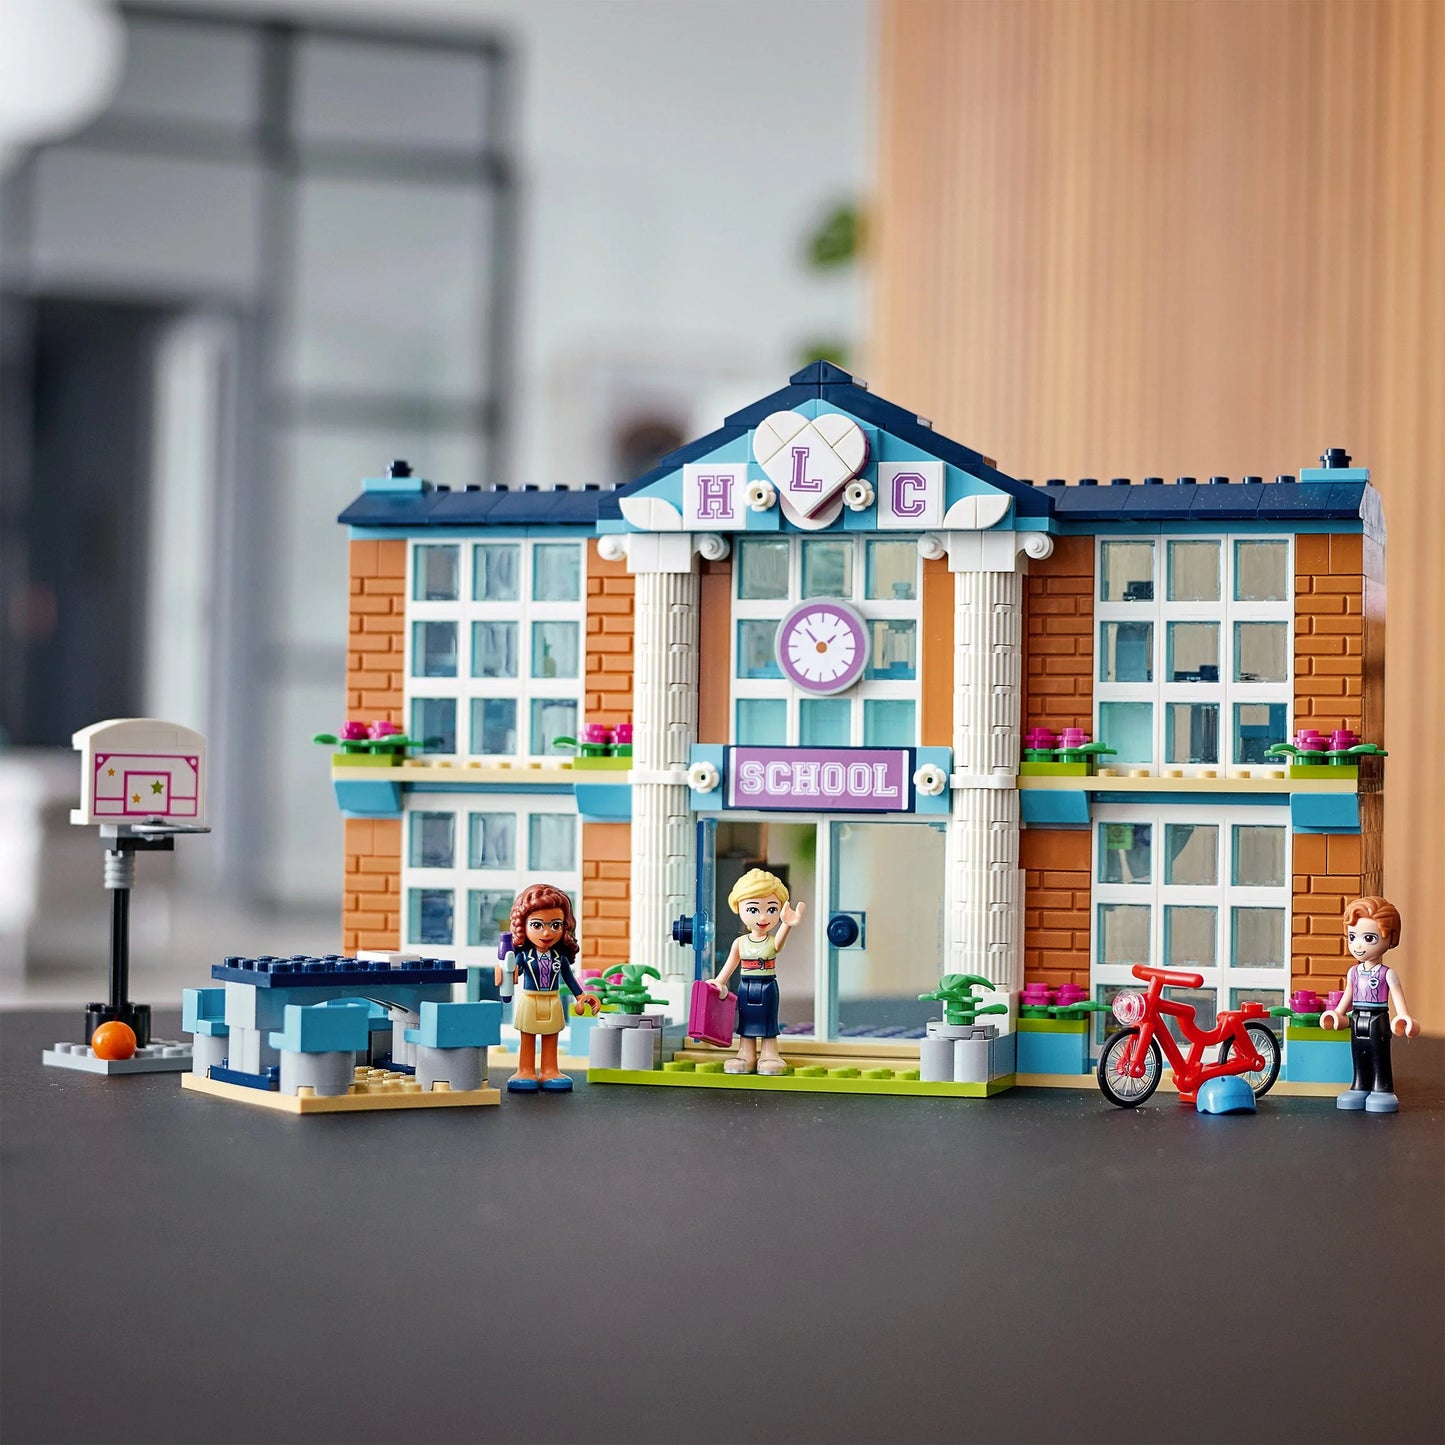 Heartlake City School - LEGO Friends